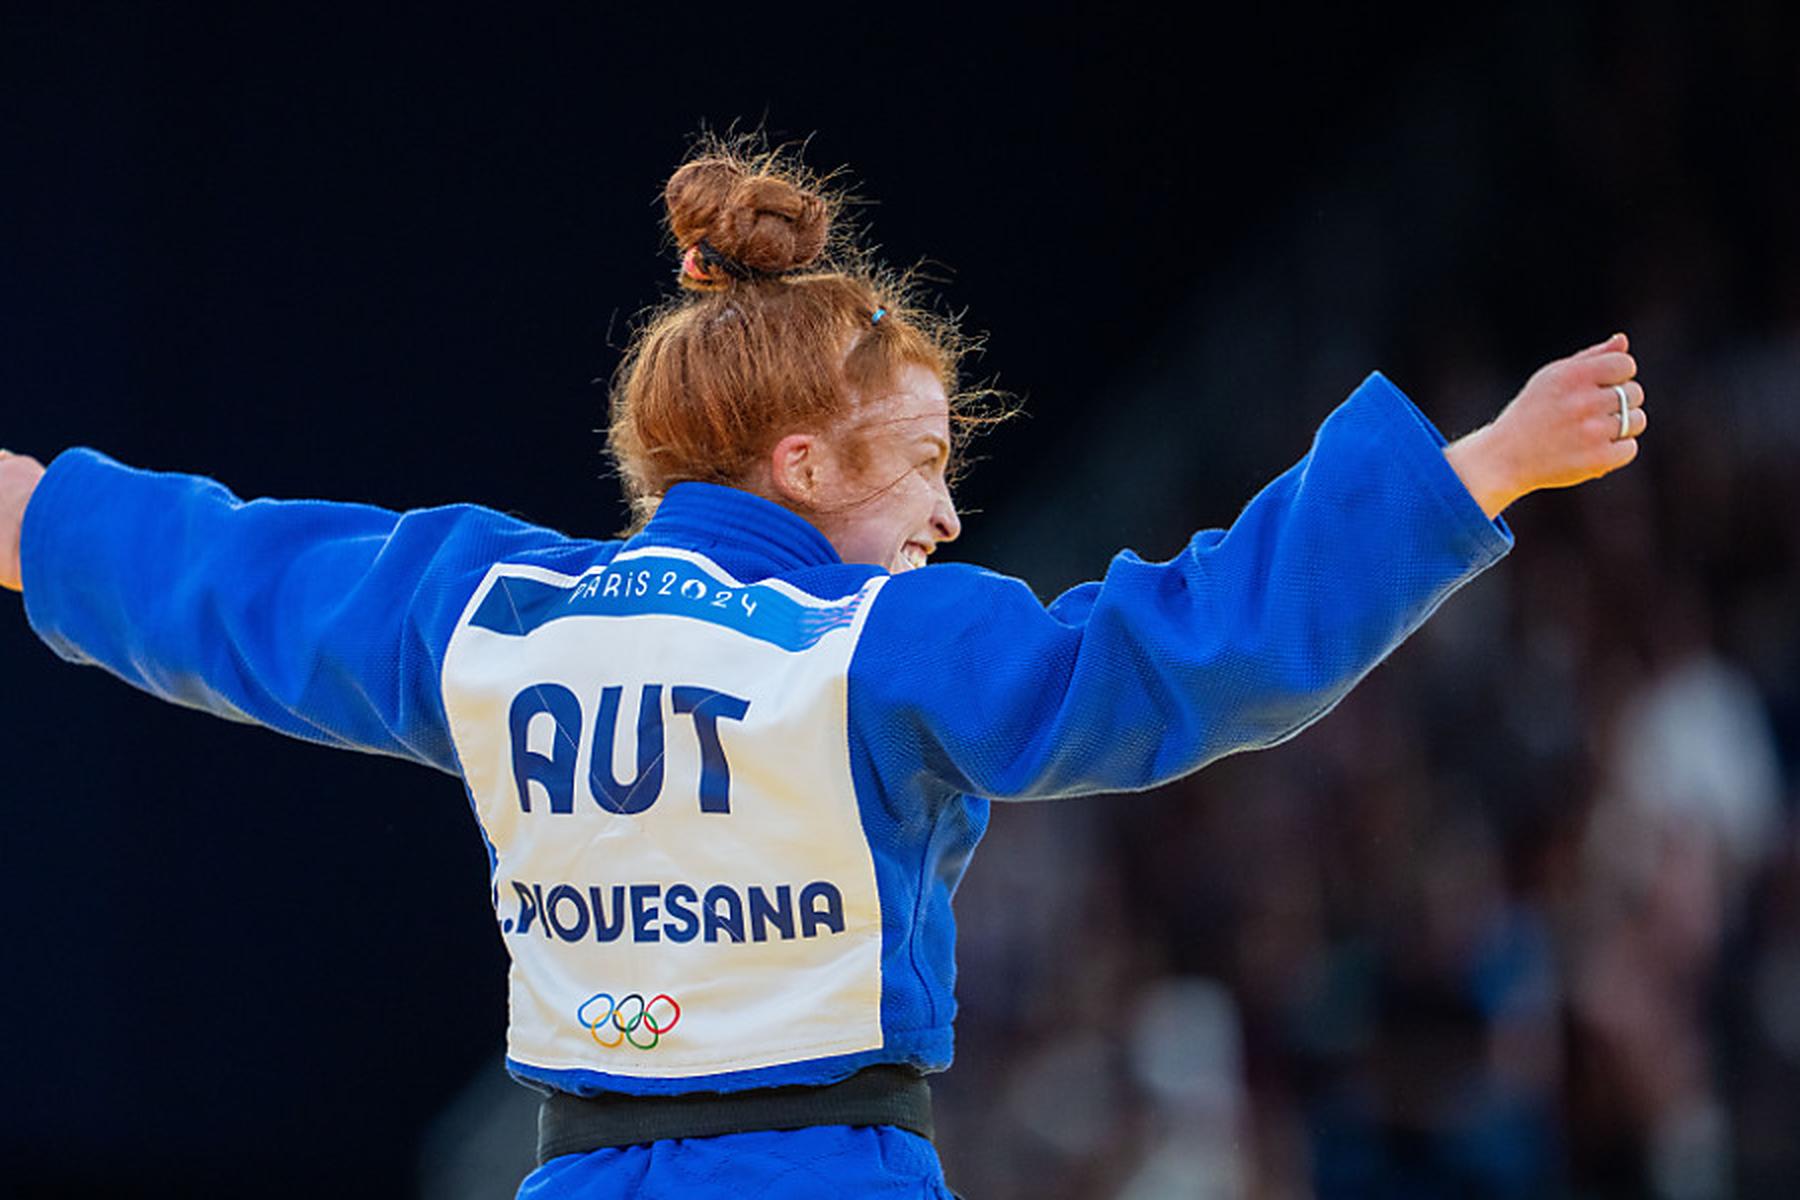 Paris: Bronzekampf verloren: Platz 5 für Judoka Piovesana in Paris